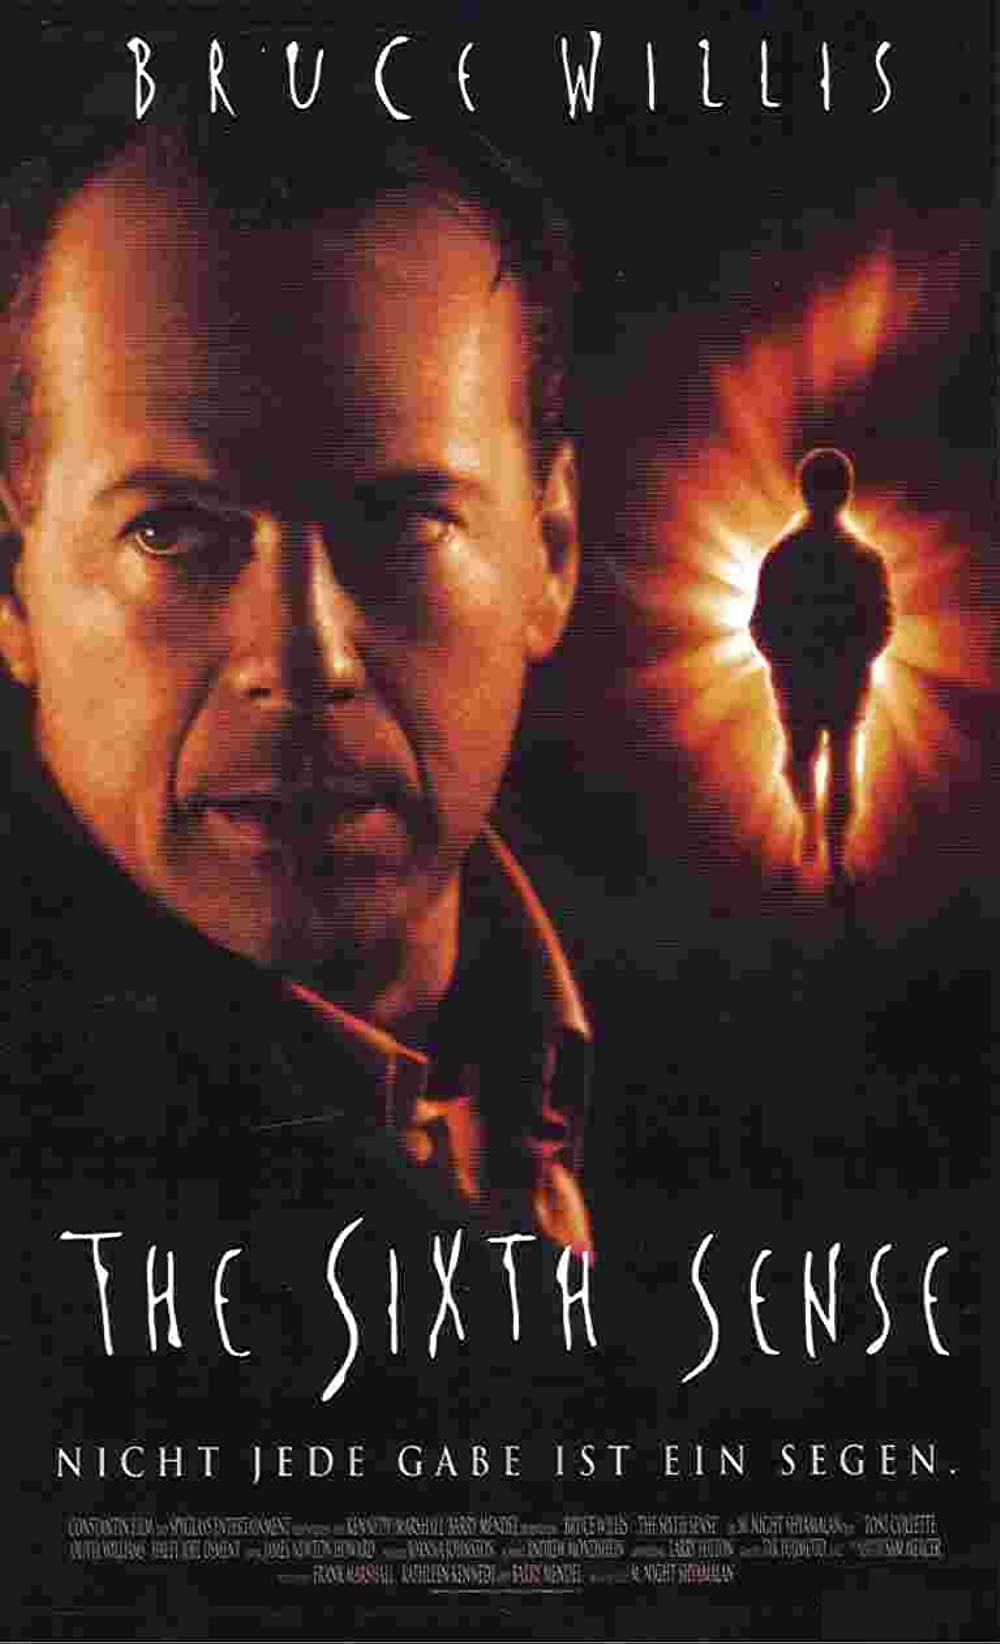 Filmbeschreibung zu The Sixth Sense